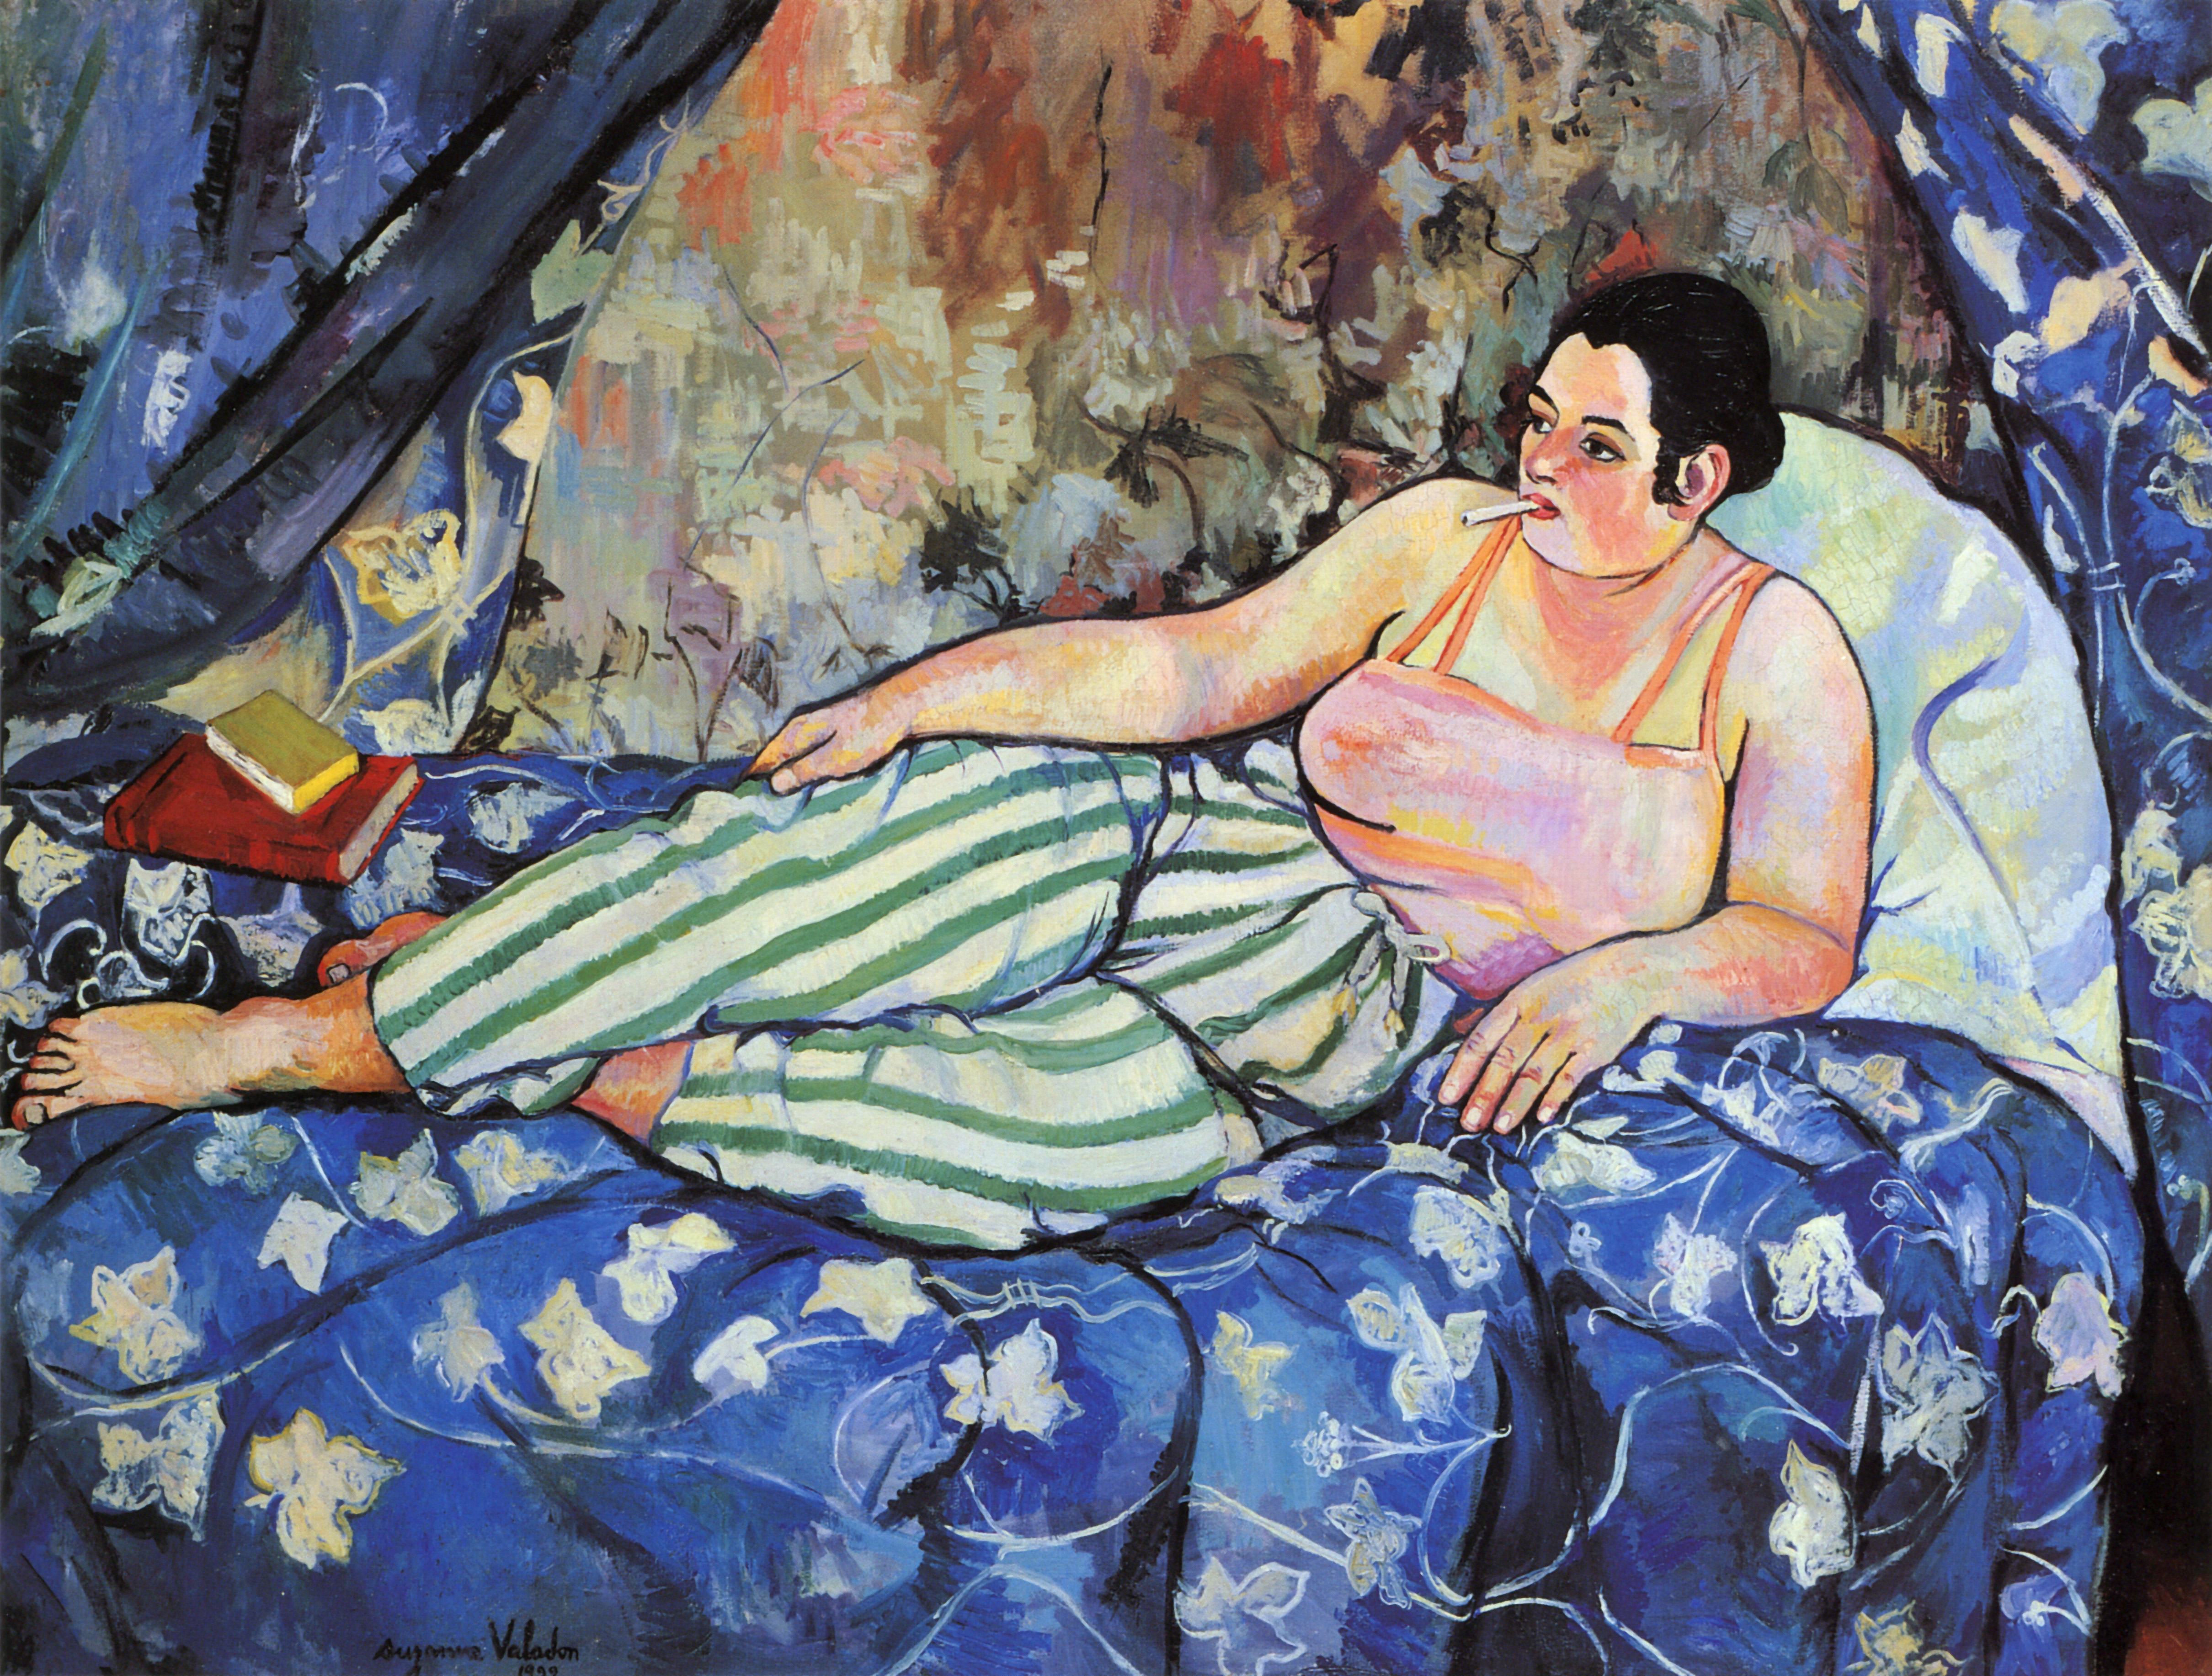 藍色房間 by Suzanne Valadon - 1923 - 90 x 160 公分 